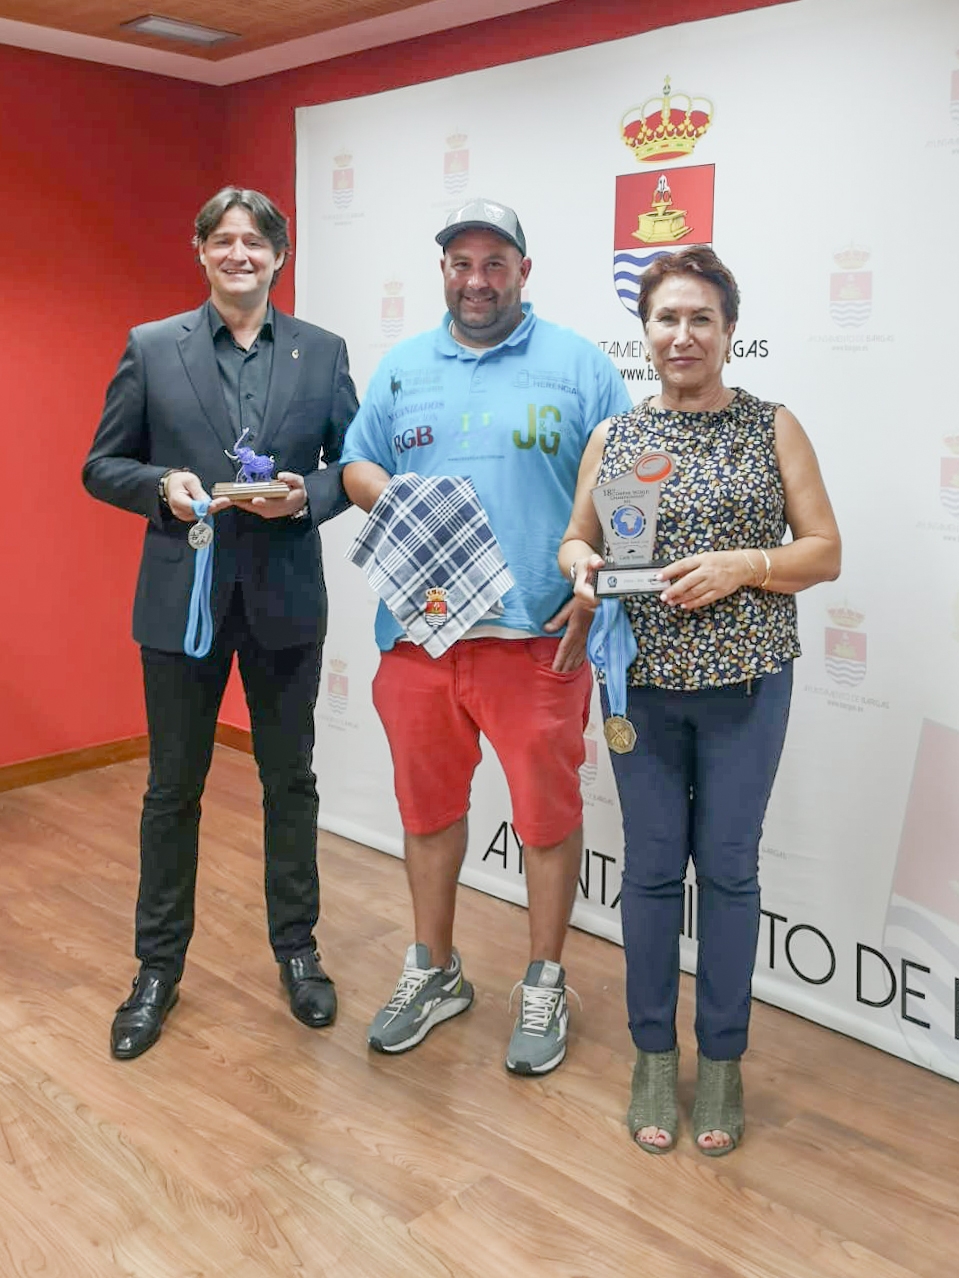 Jesús Gracia Martín-Delgado, Tercero del Mundo, es recibido por la Alcaldesa de Bargas